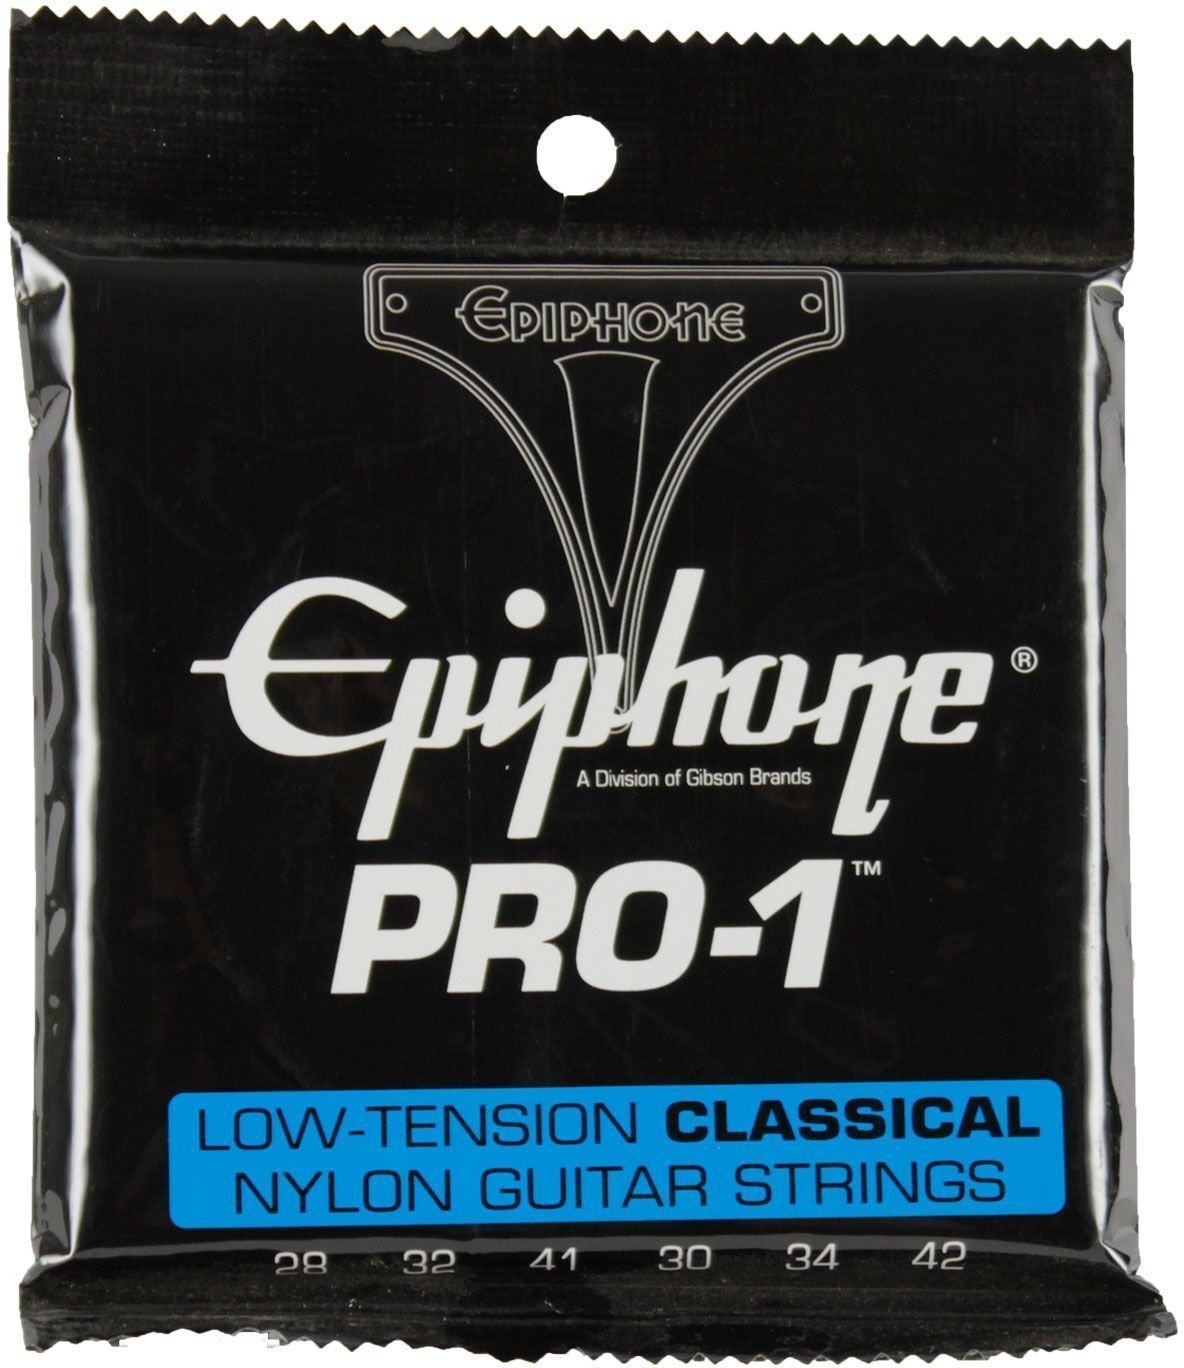 Nylonové struny pro klasickou kytaru Epiphone Pro-1 Ultra-Light Classical Strings